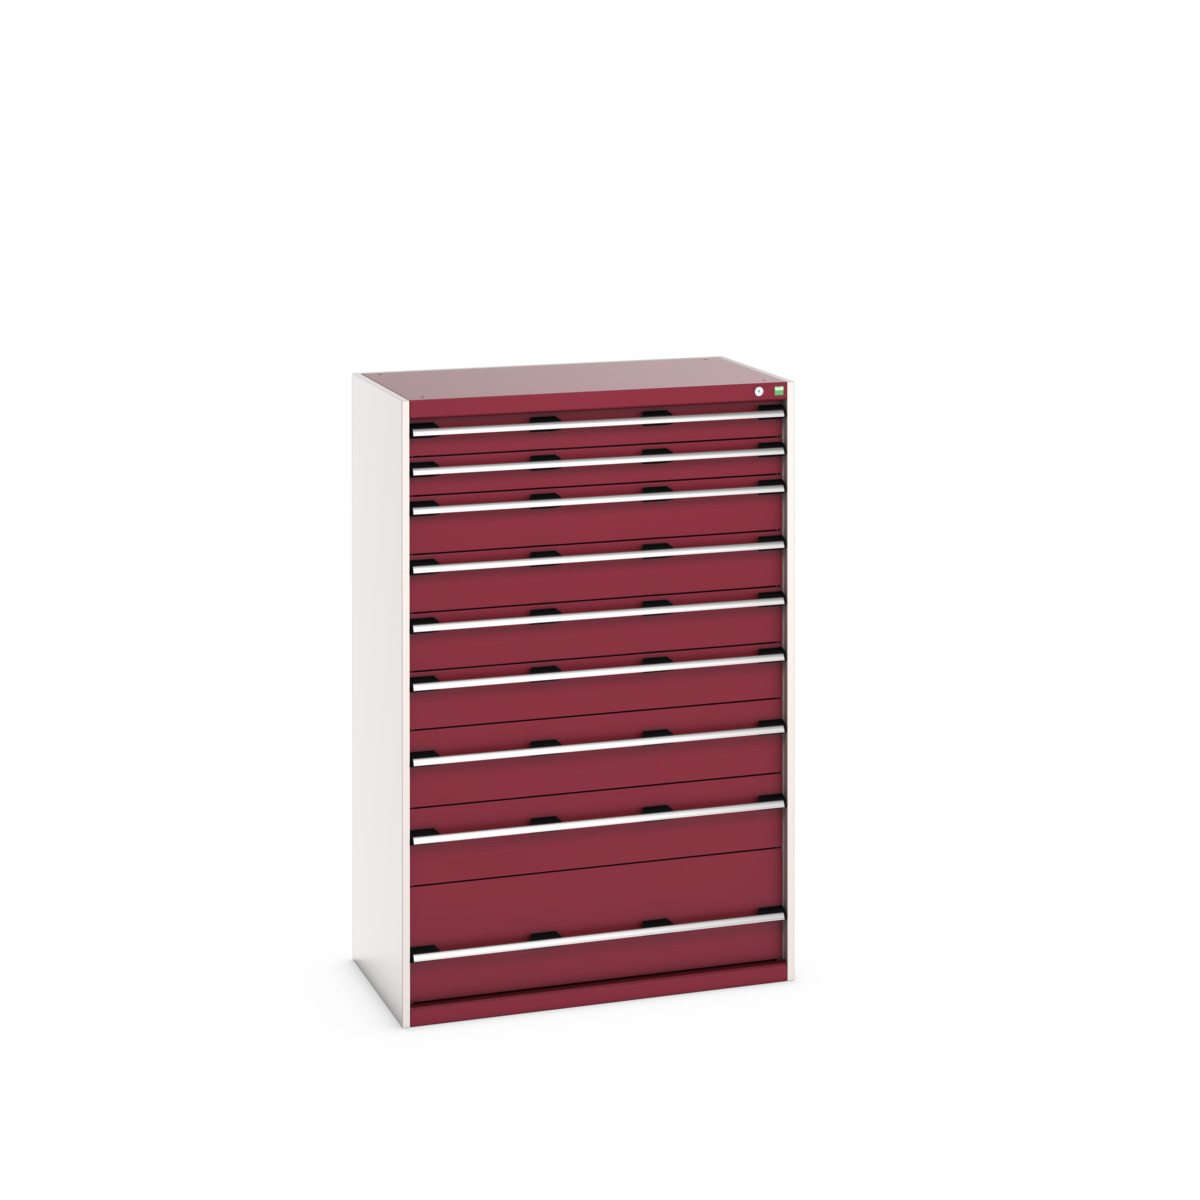 40021043.24V - cubio drawer cabinet